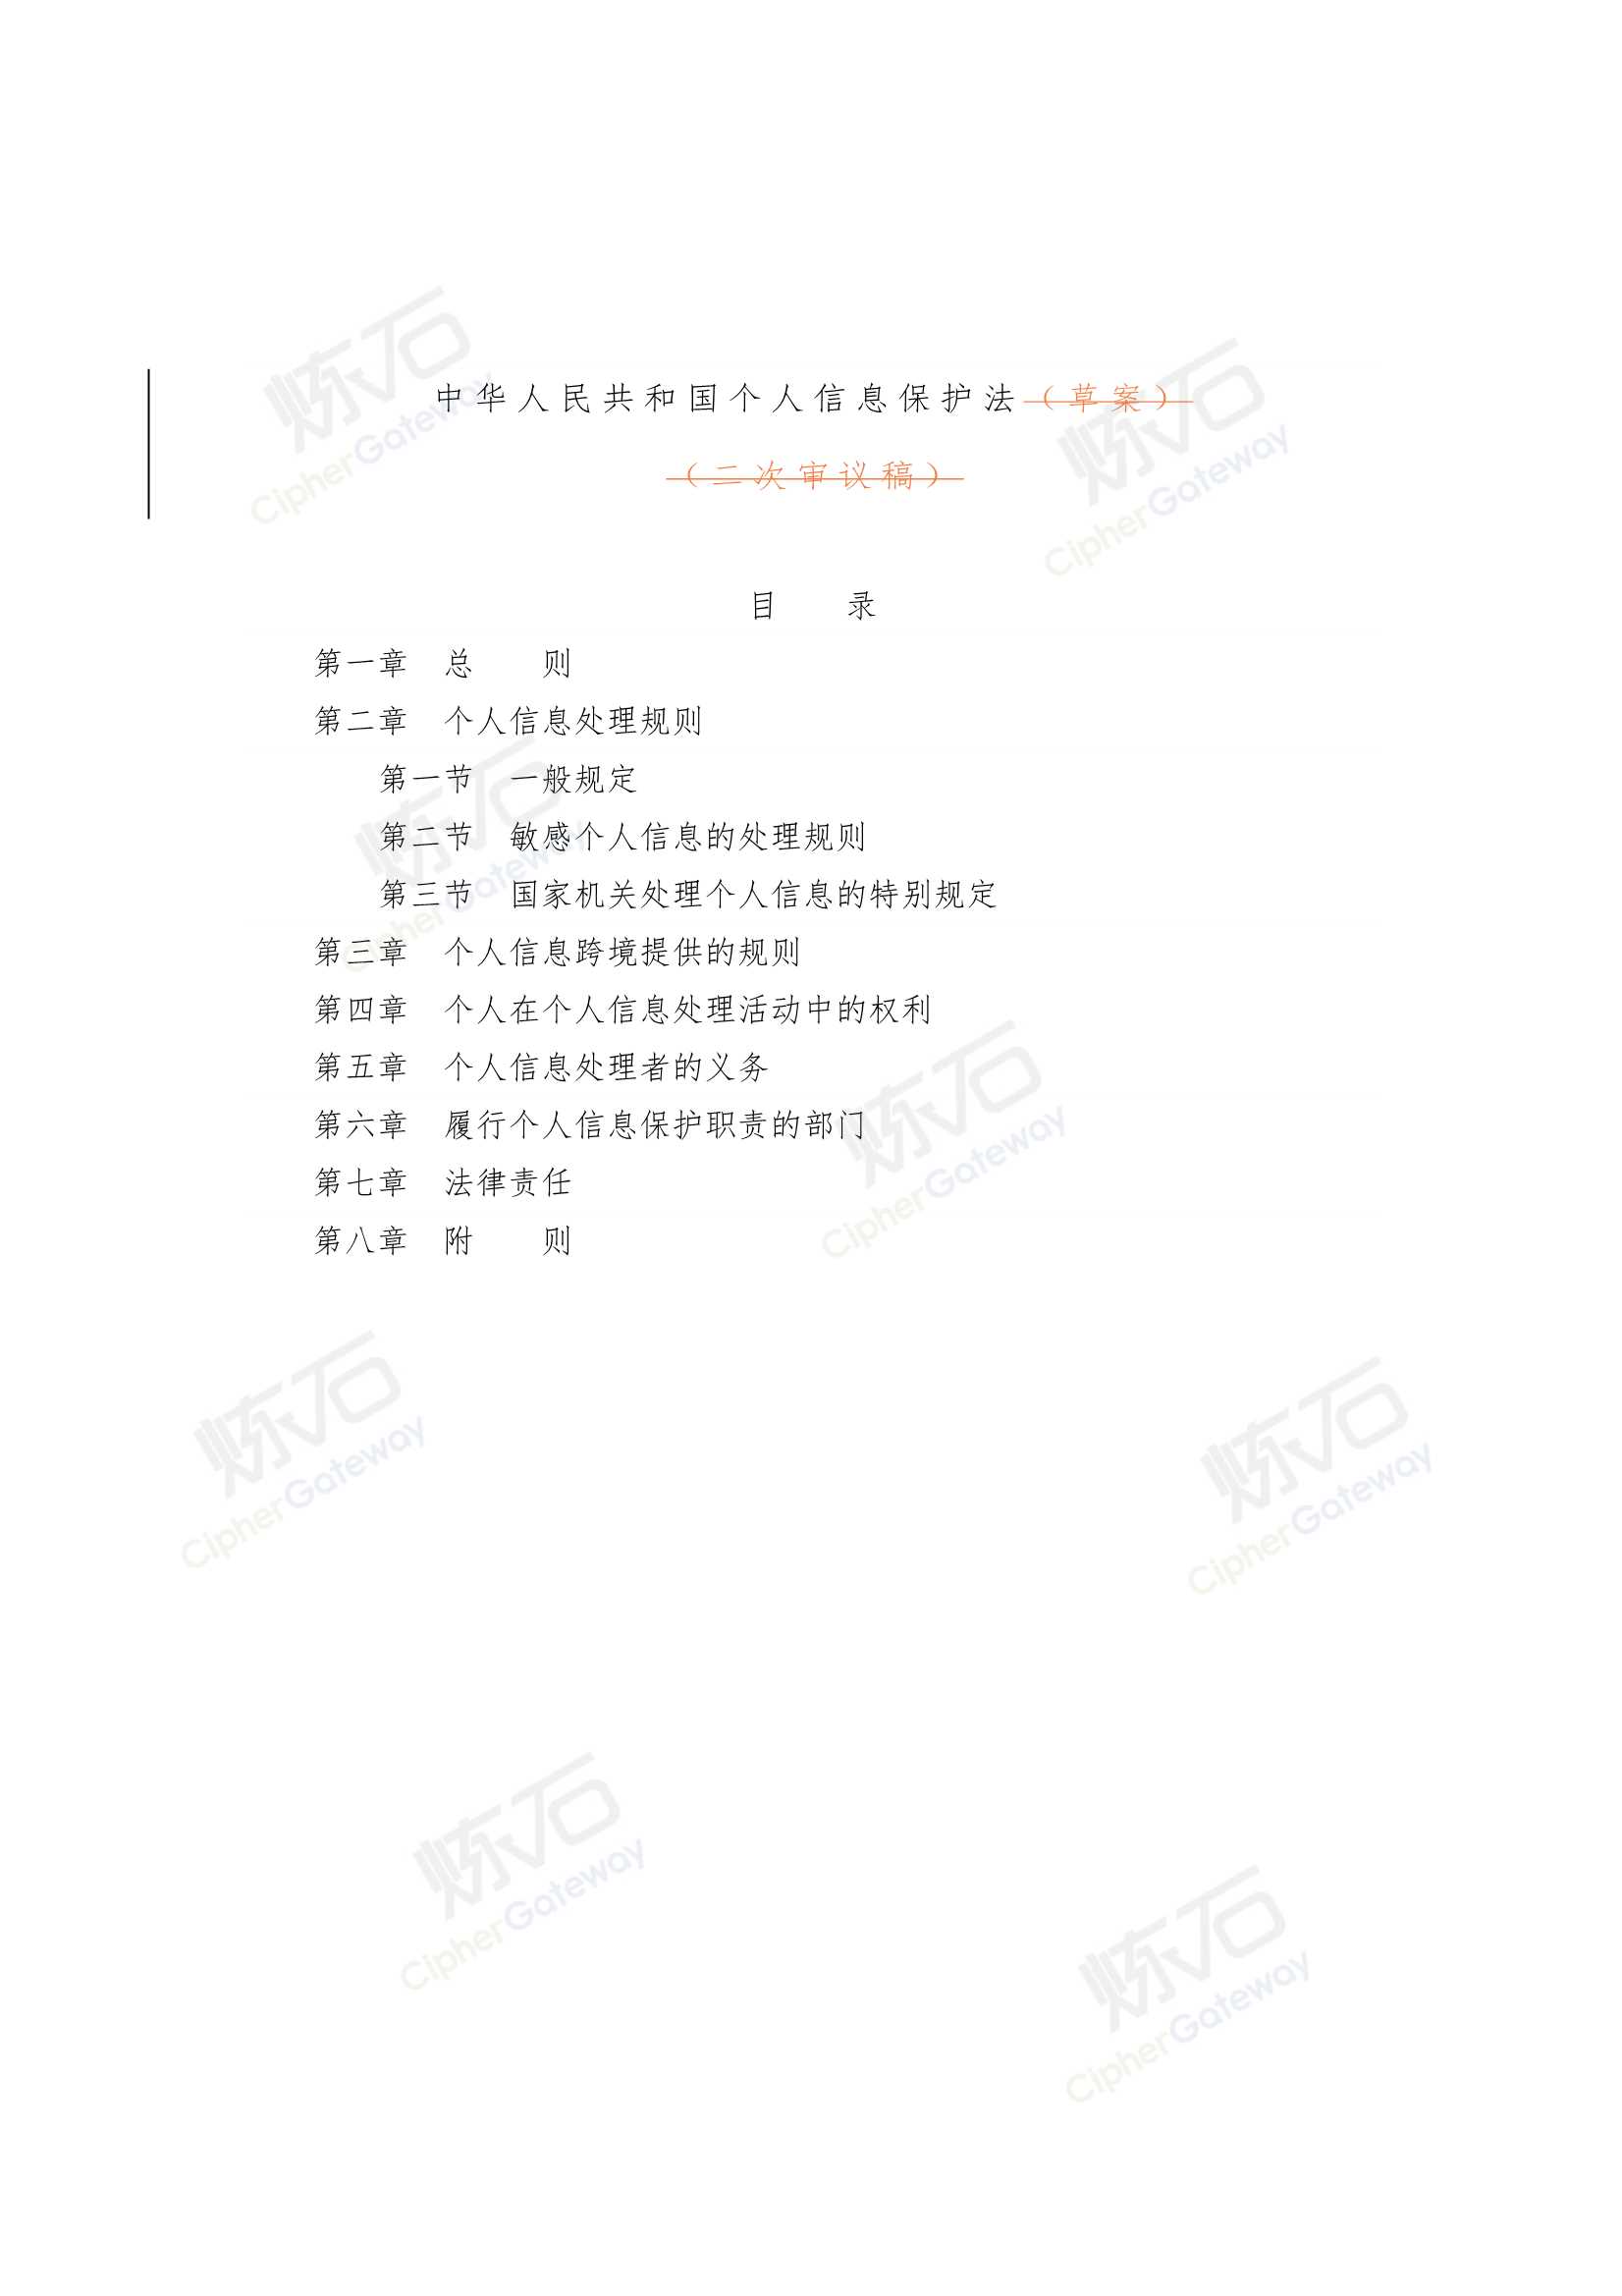 炼石网络-中华人民共和国个人信息保护法 修订对比-2021.08-16页